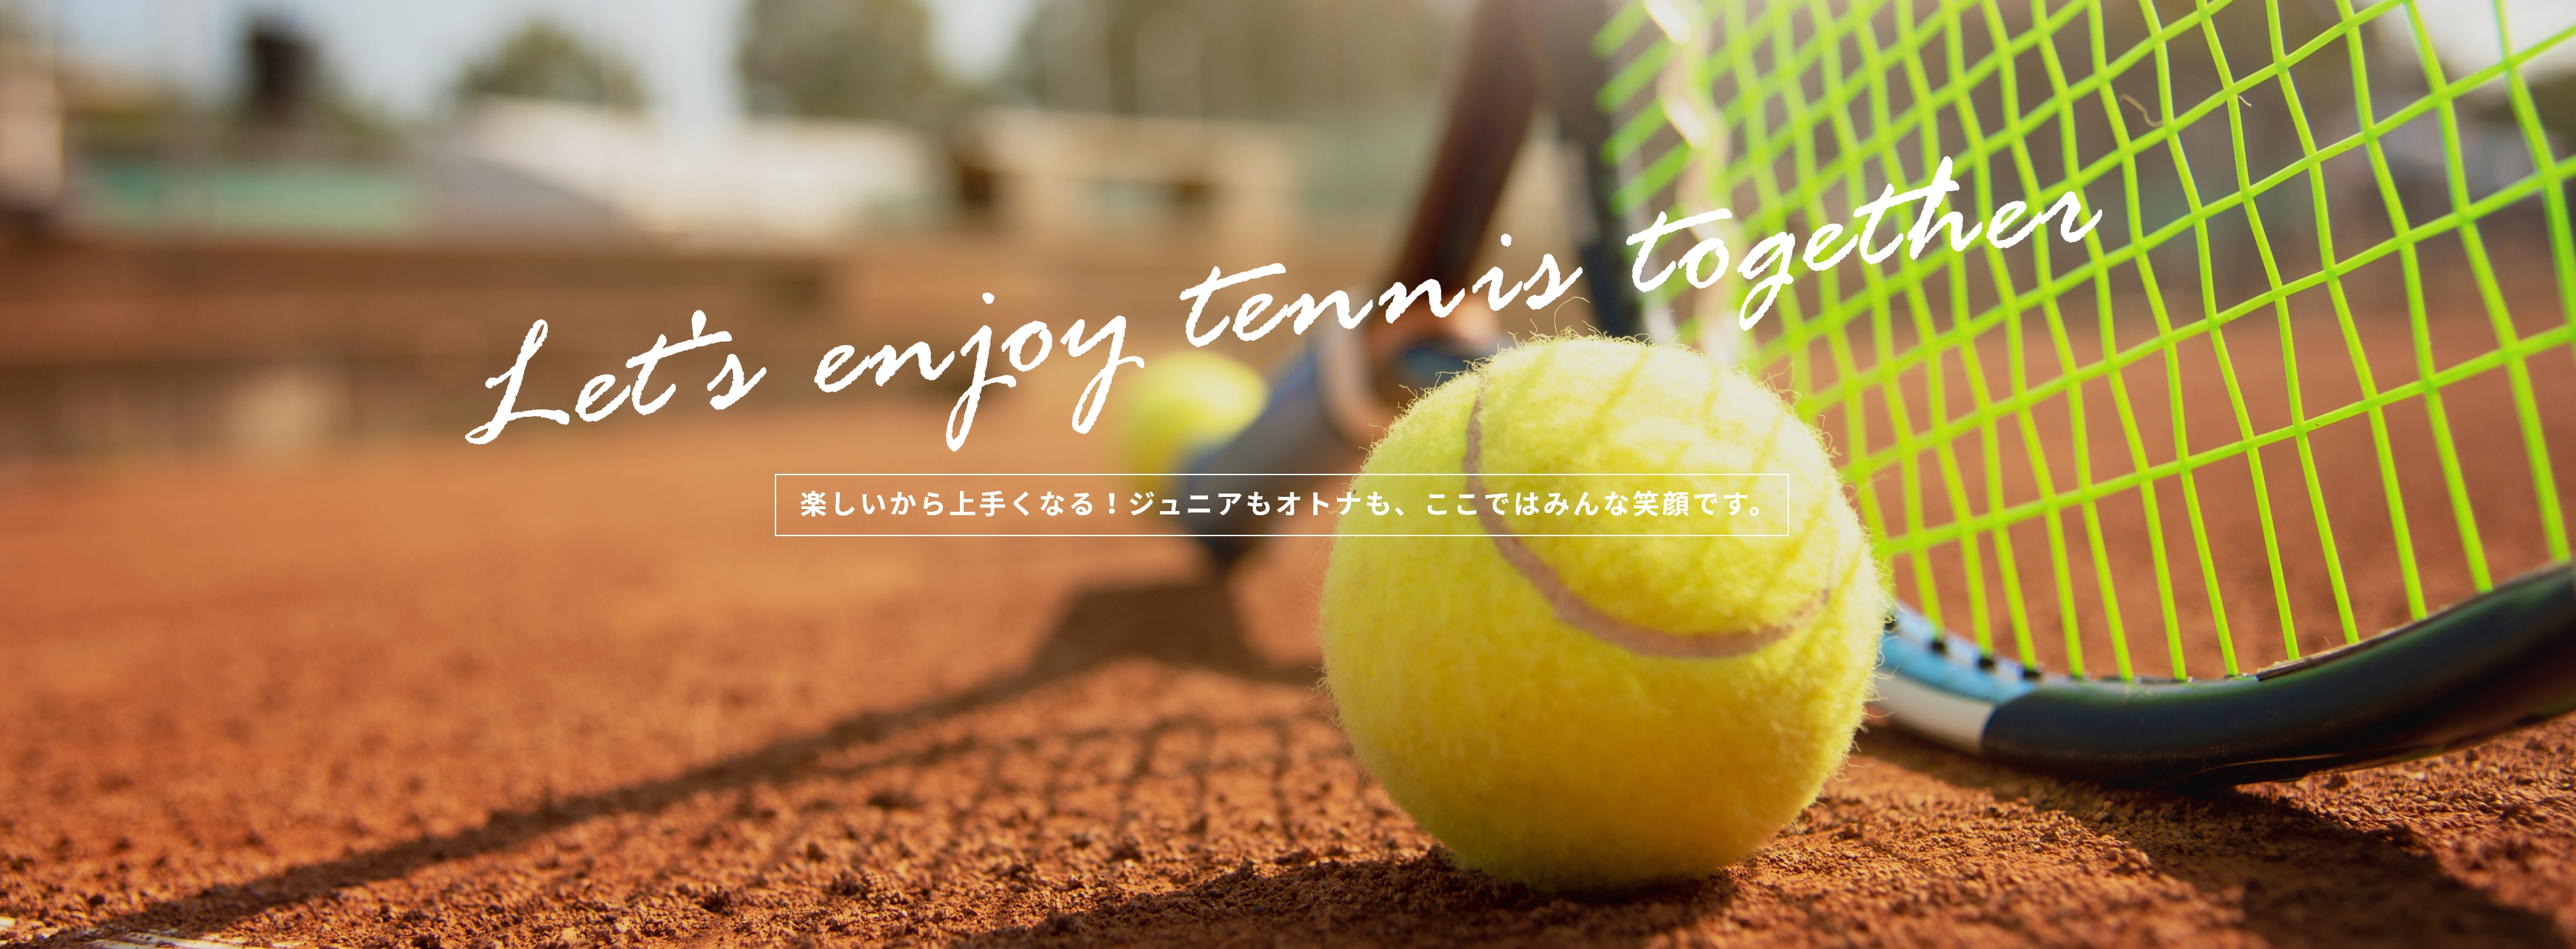 Let's enjoy tennis together 楽しいから上手くなる！ジュニアもオトナも、ここではみんな笑顔です。